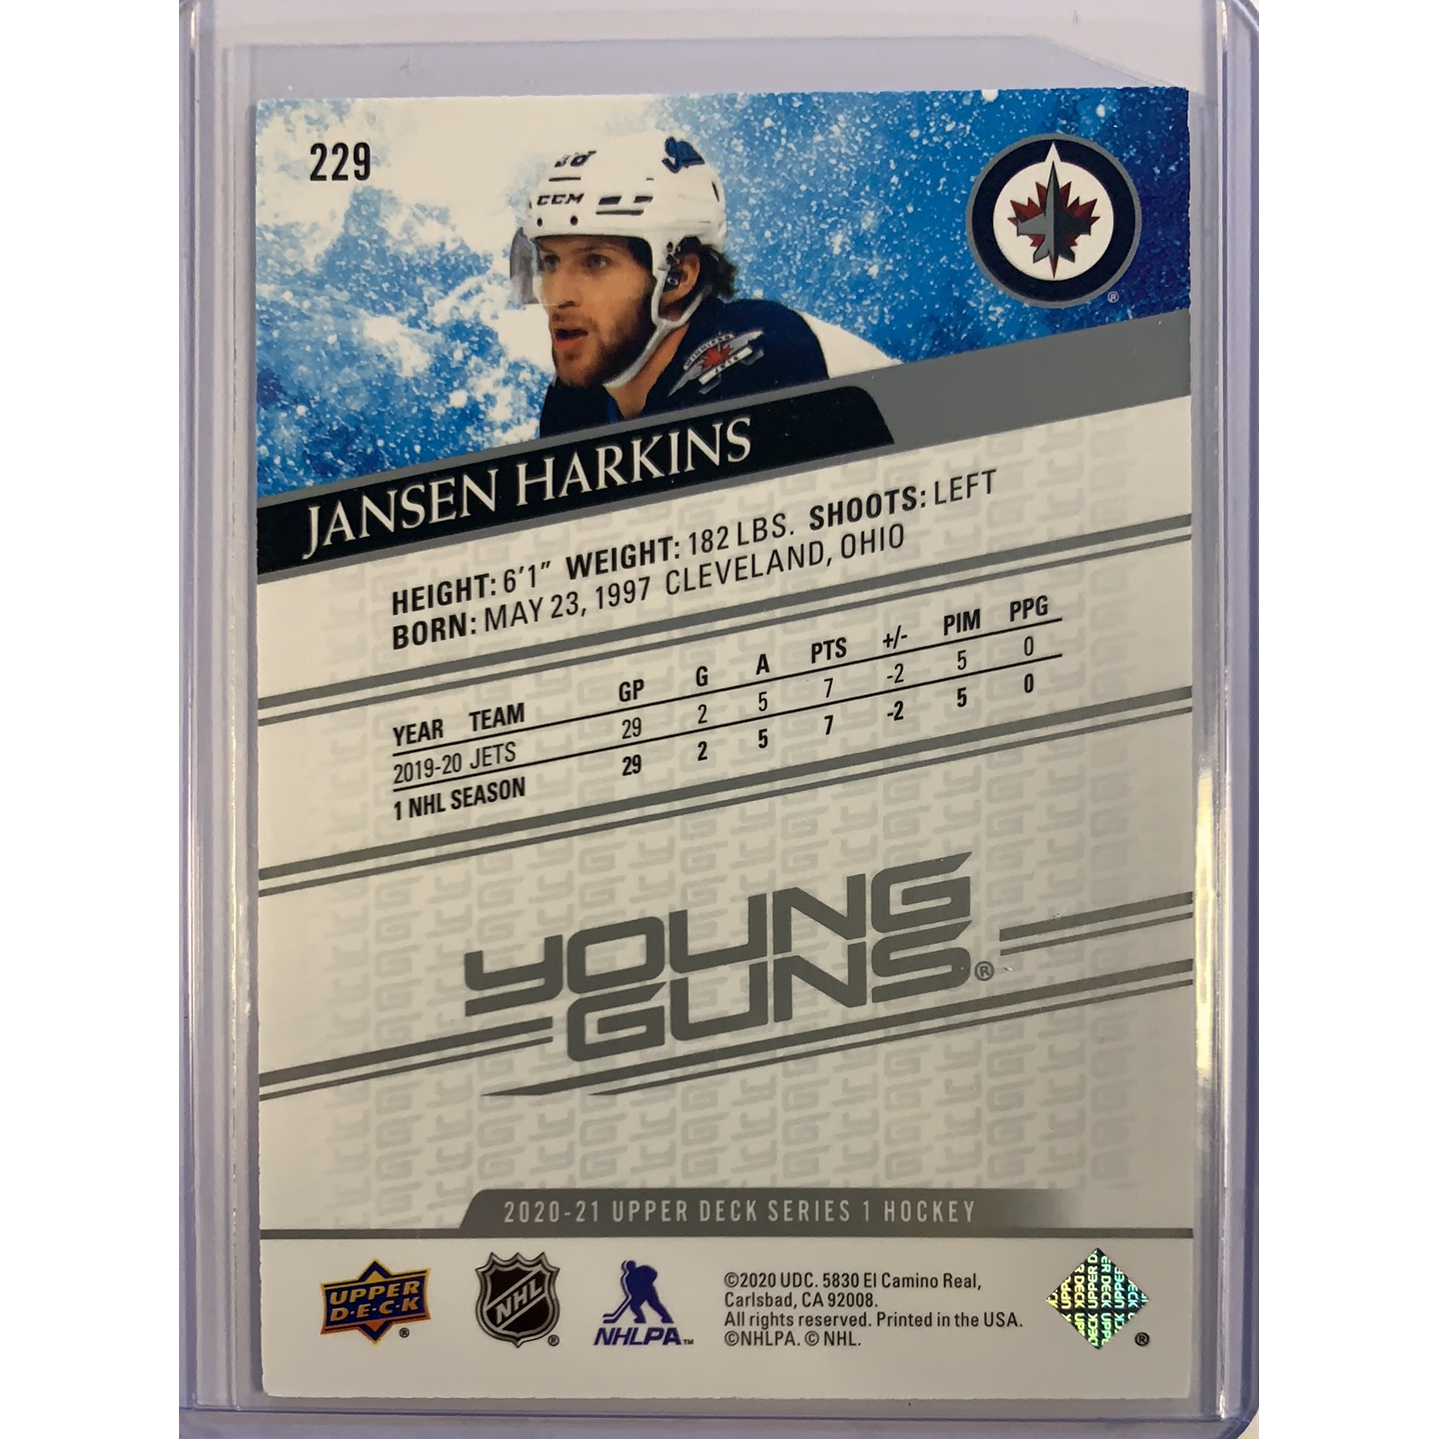  2020-21 Upper Deck Series 1 Jansen Harkins Young Guns  Local Legends Cards & Collectibles